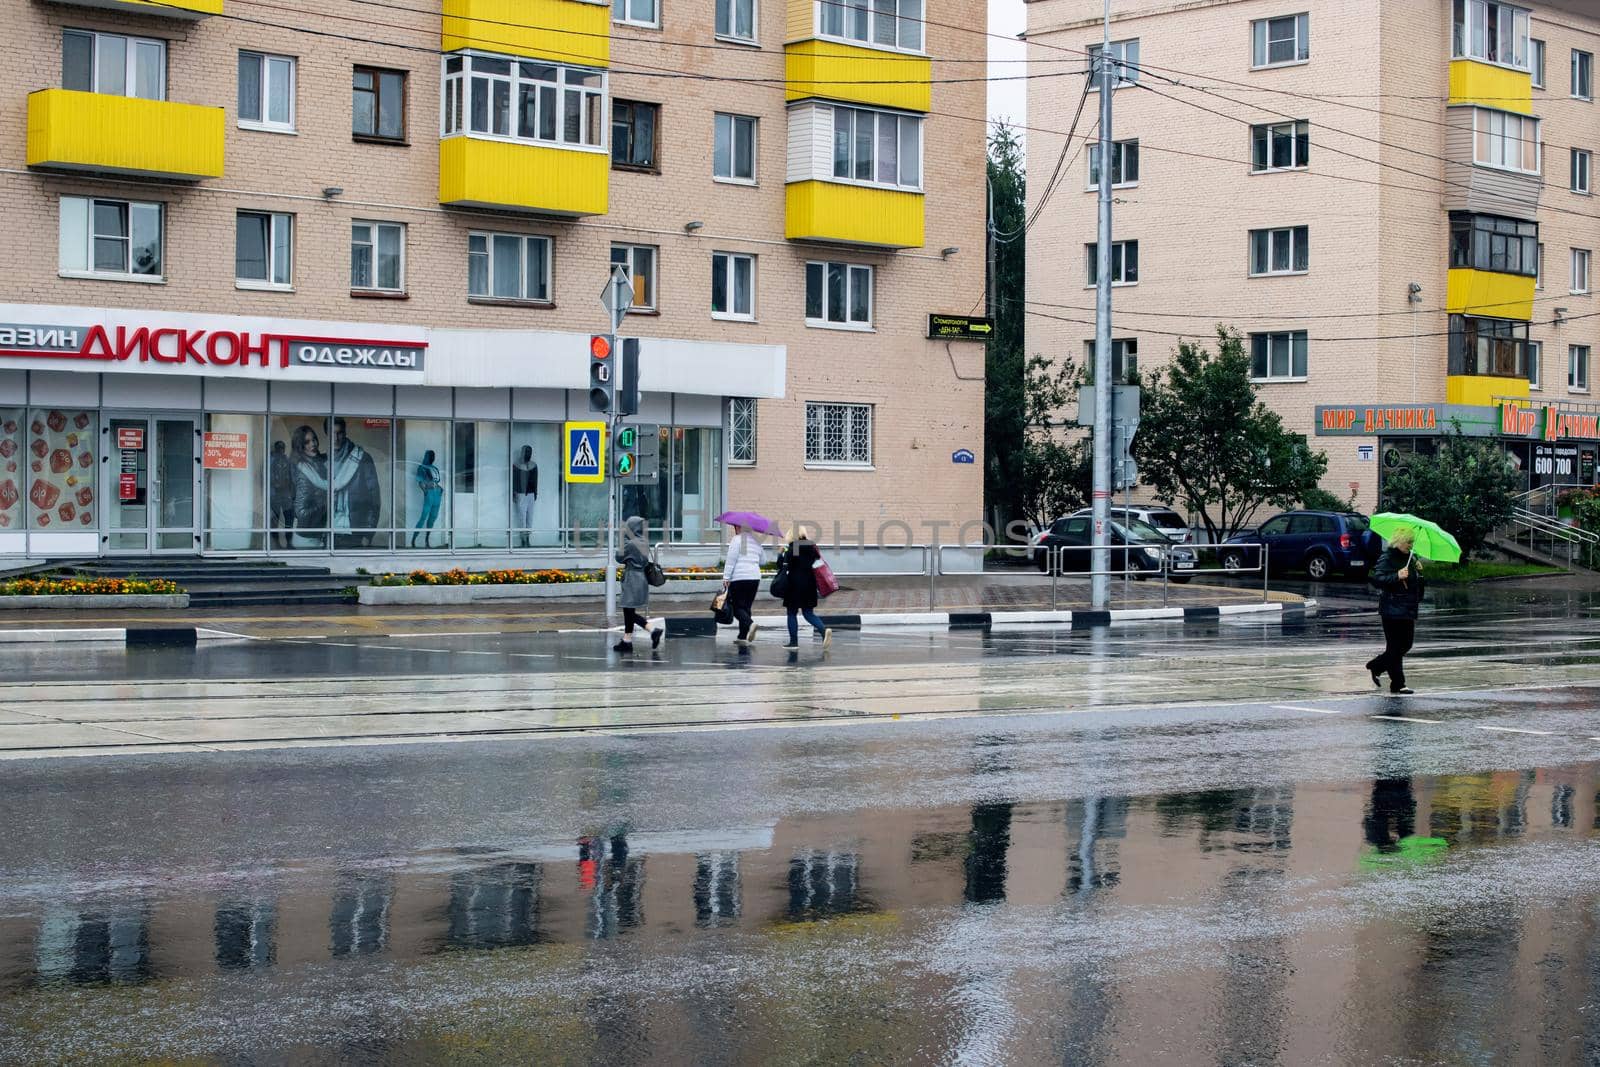 BELARUS, VITEBSK - SEPTEMBER 10, 2020: People at the crosswalk by Vera1703